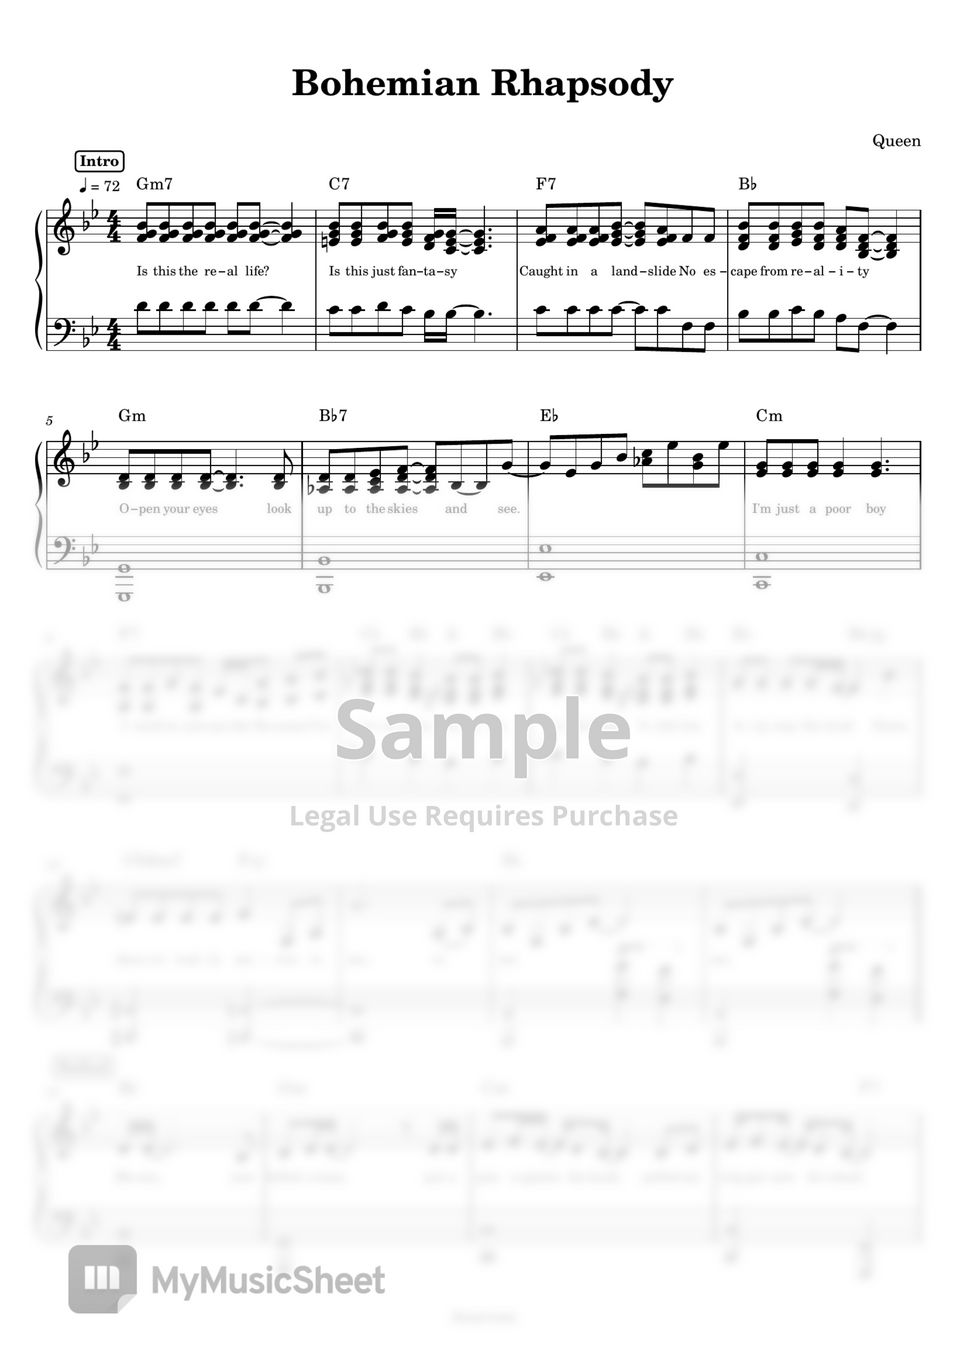 Queen - Bohemian Rhapsody (Piano) by Anacrusa